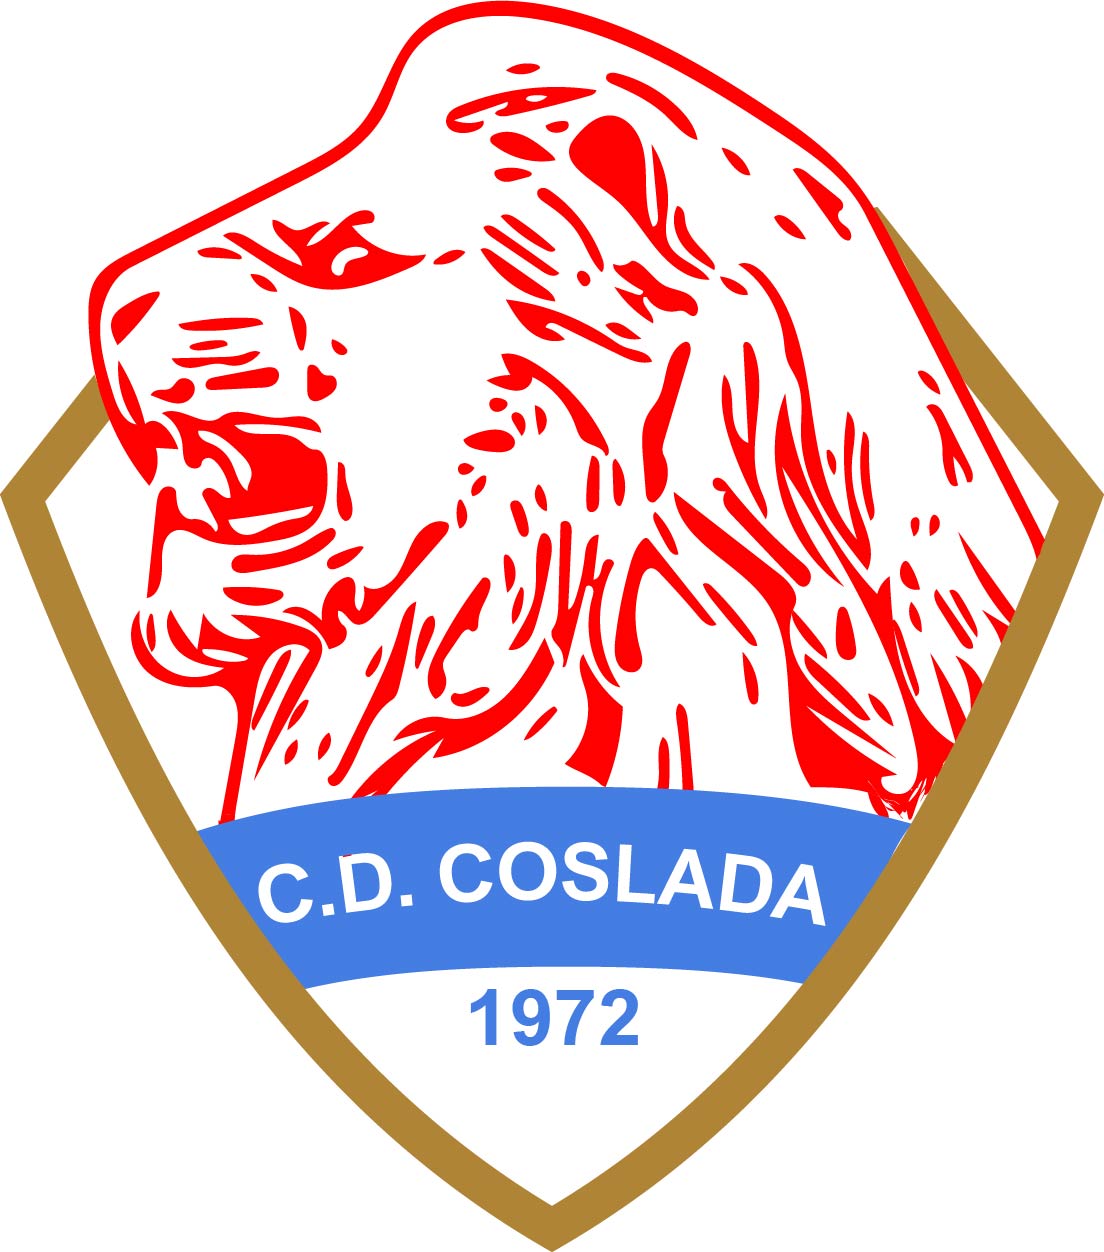 C.D. COSLADA 'D'